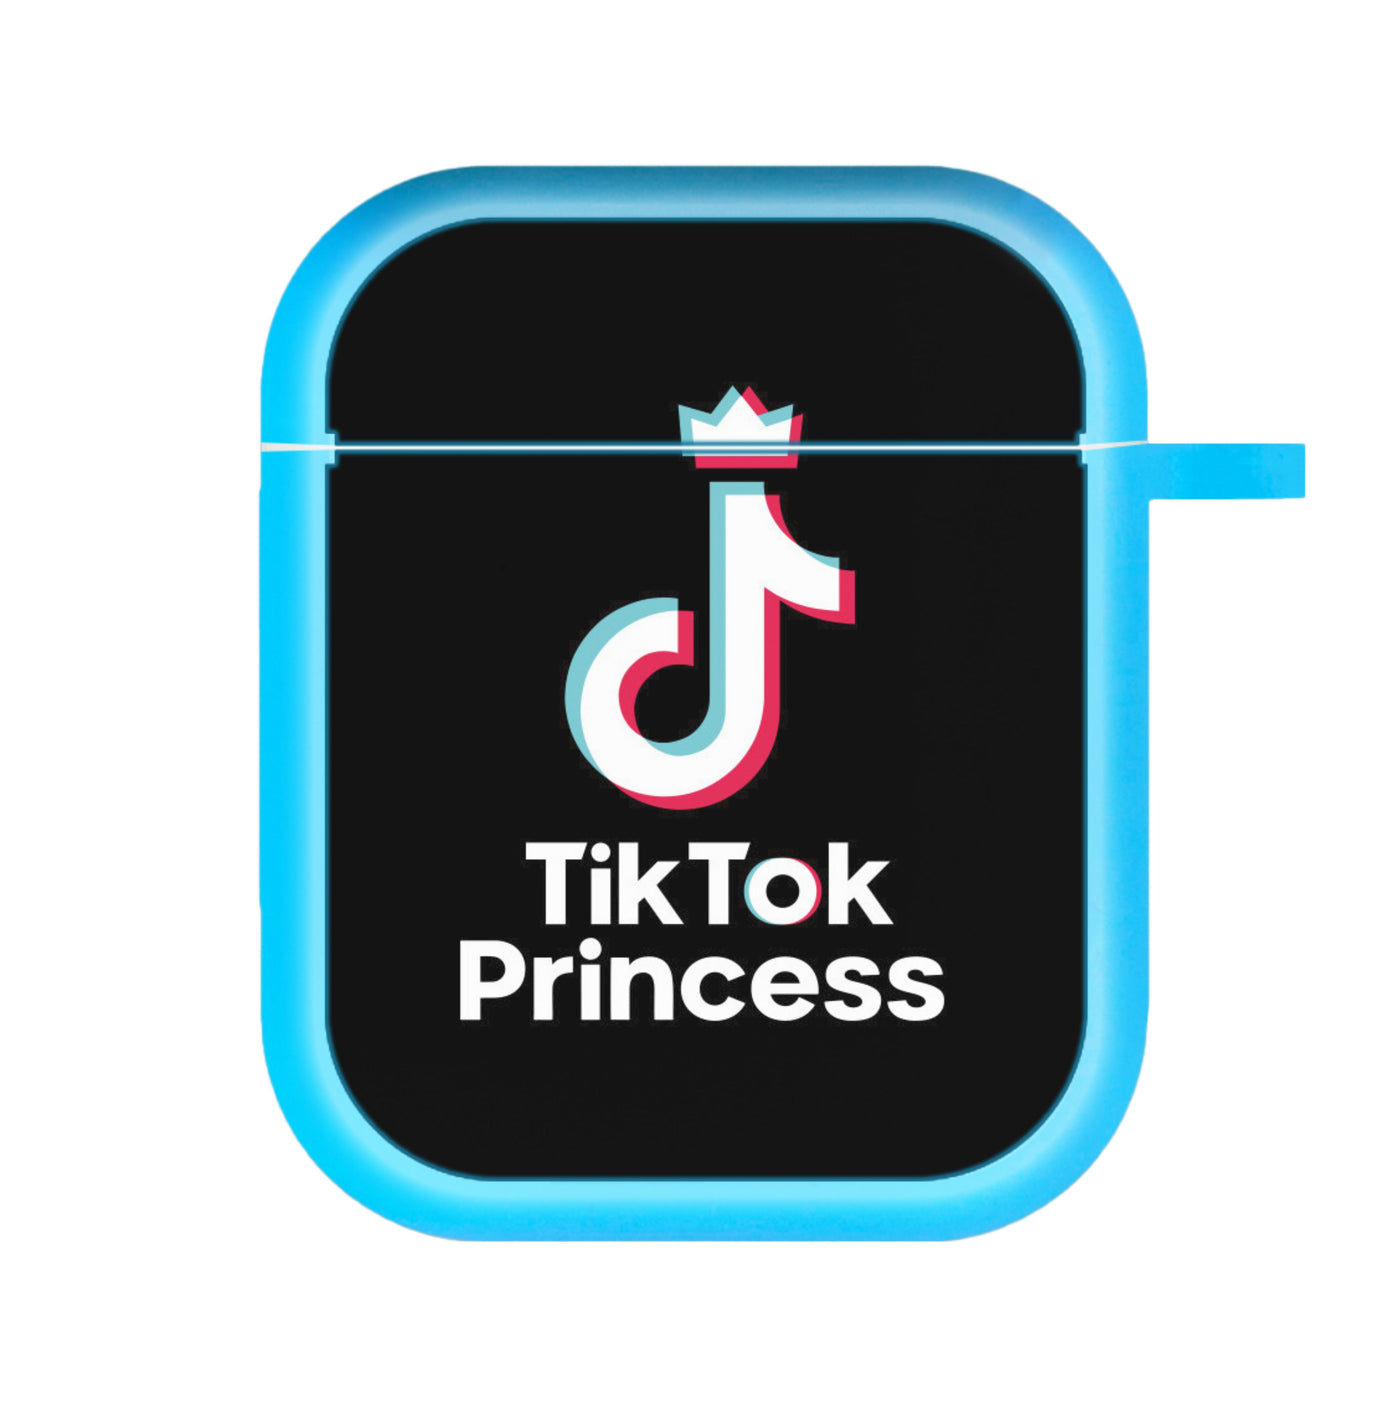 TikTok Princess AirPods Case